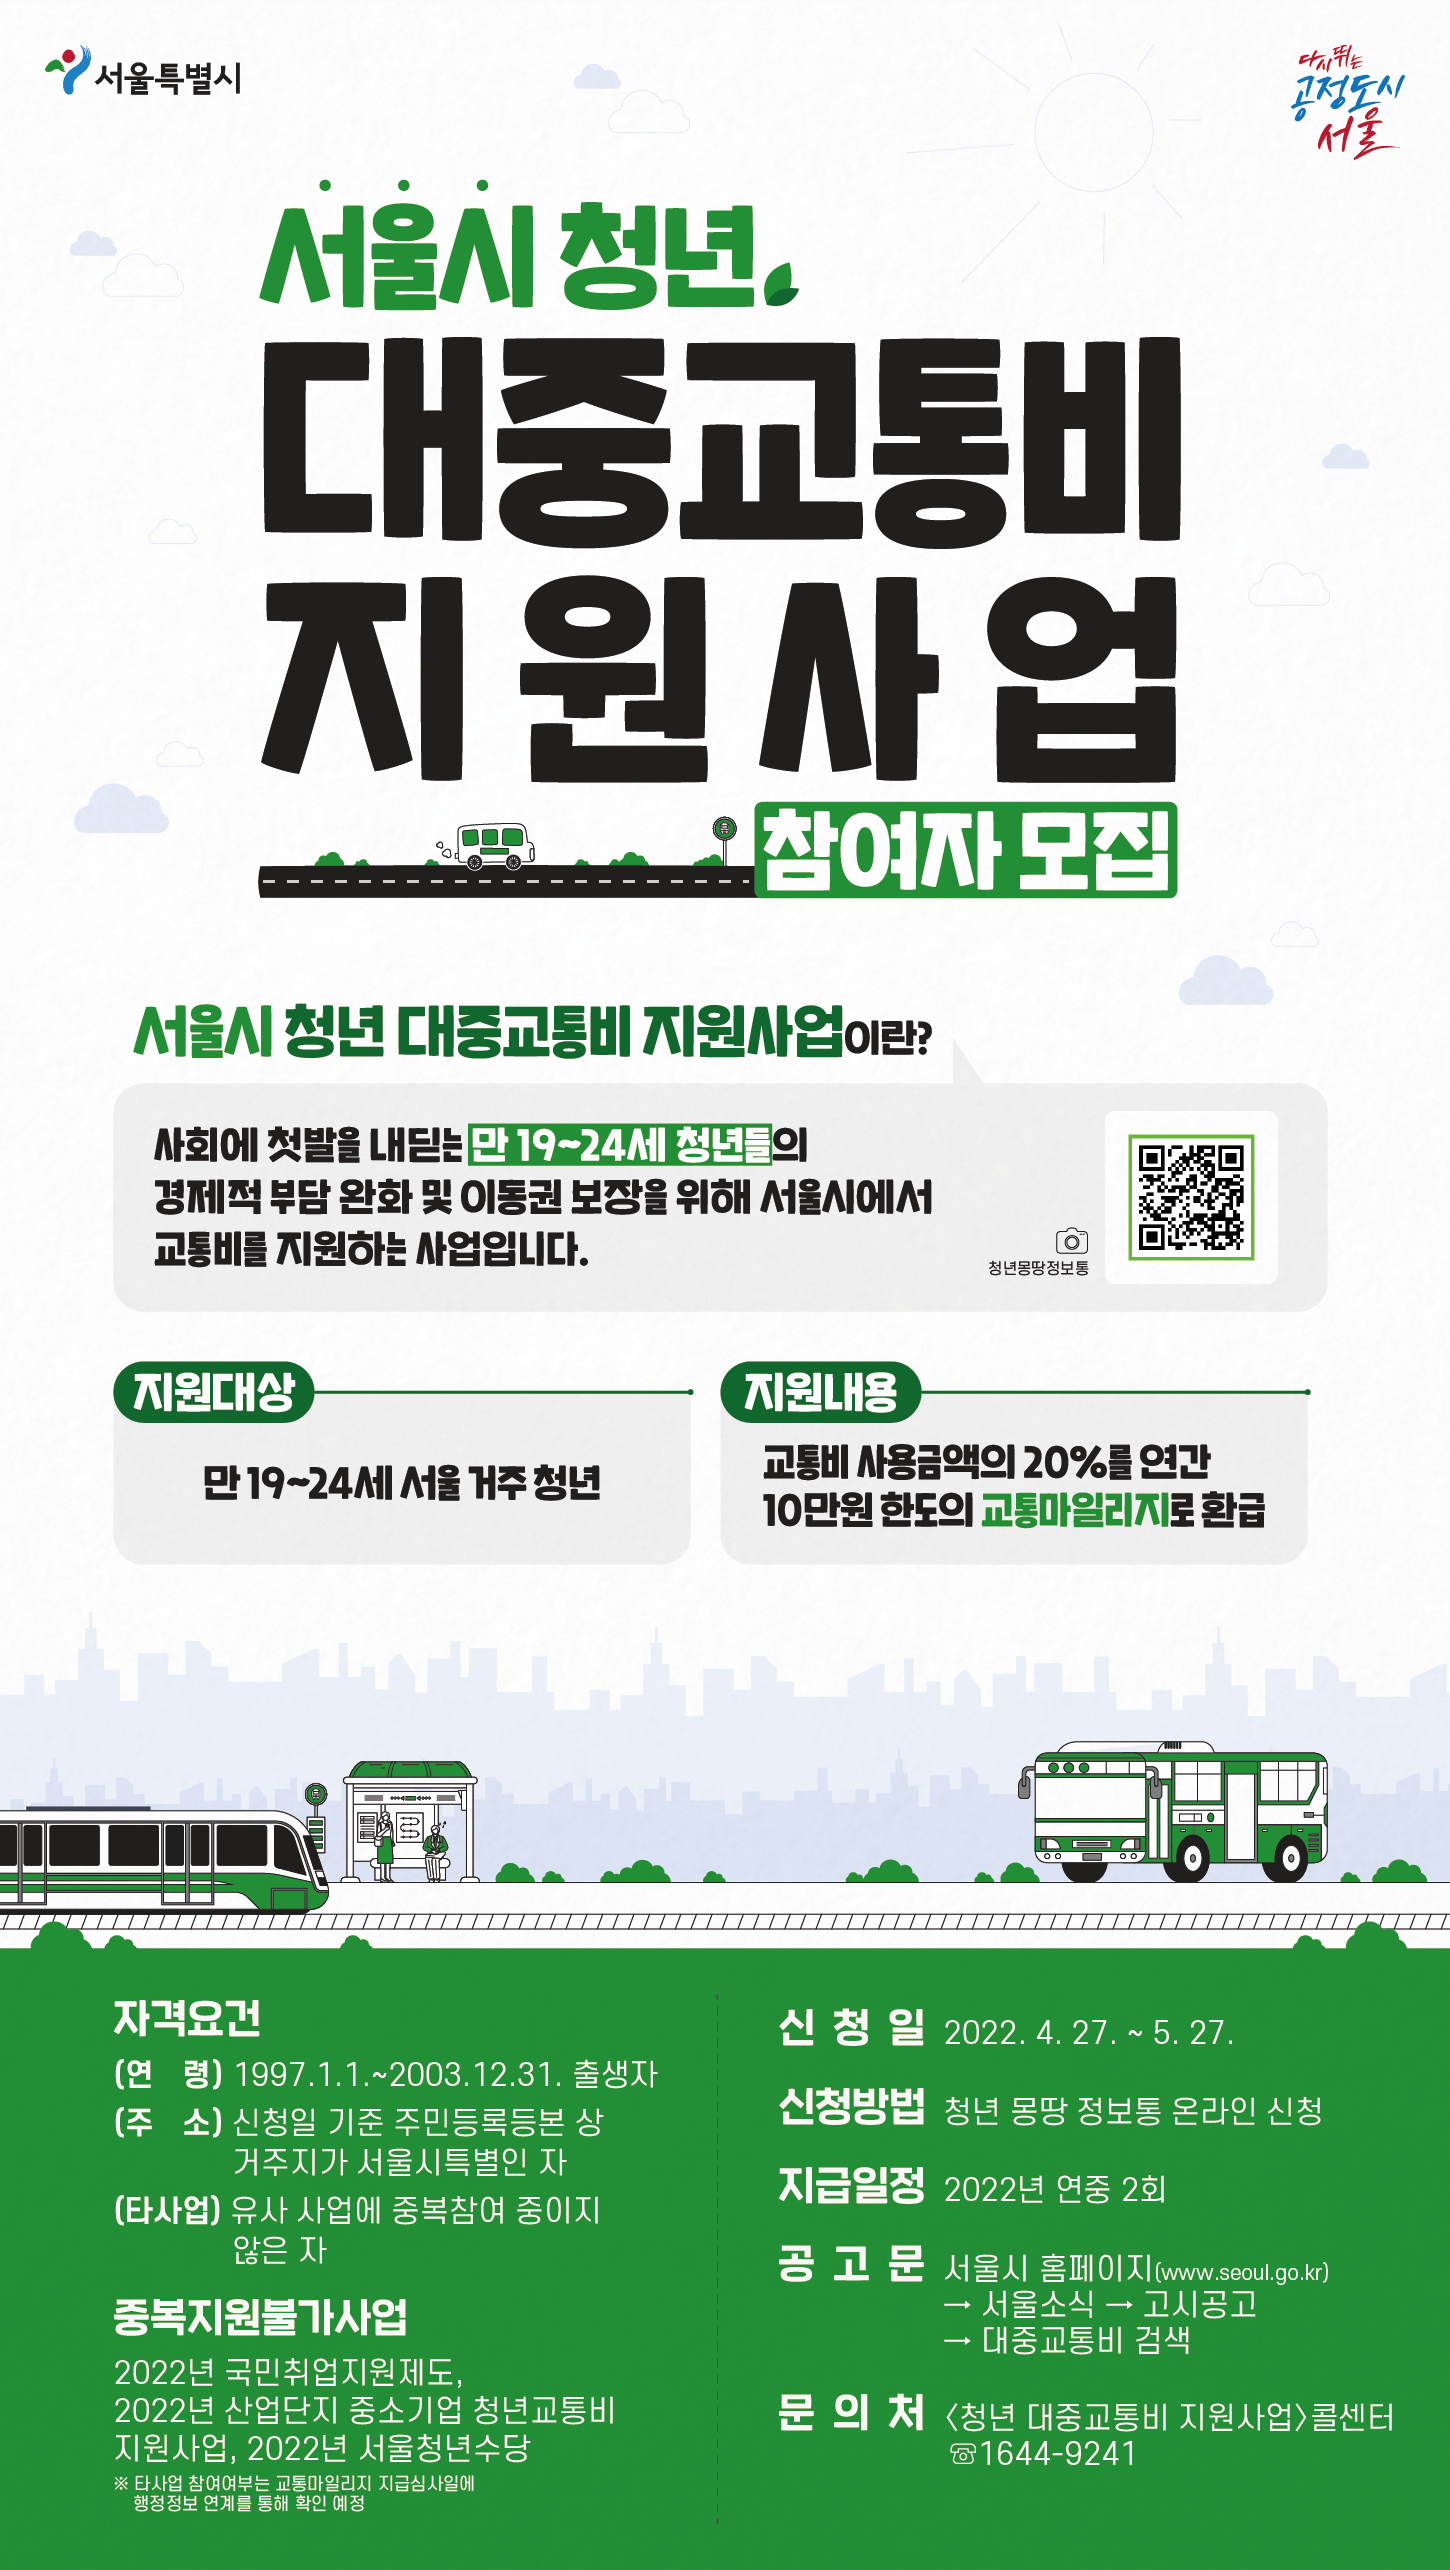 서울 청년 대중교통비 지원 사업 신청방법